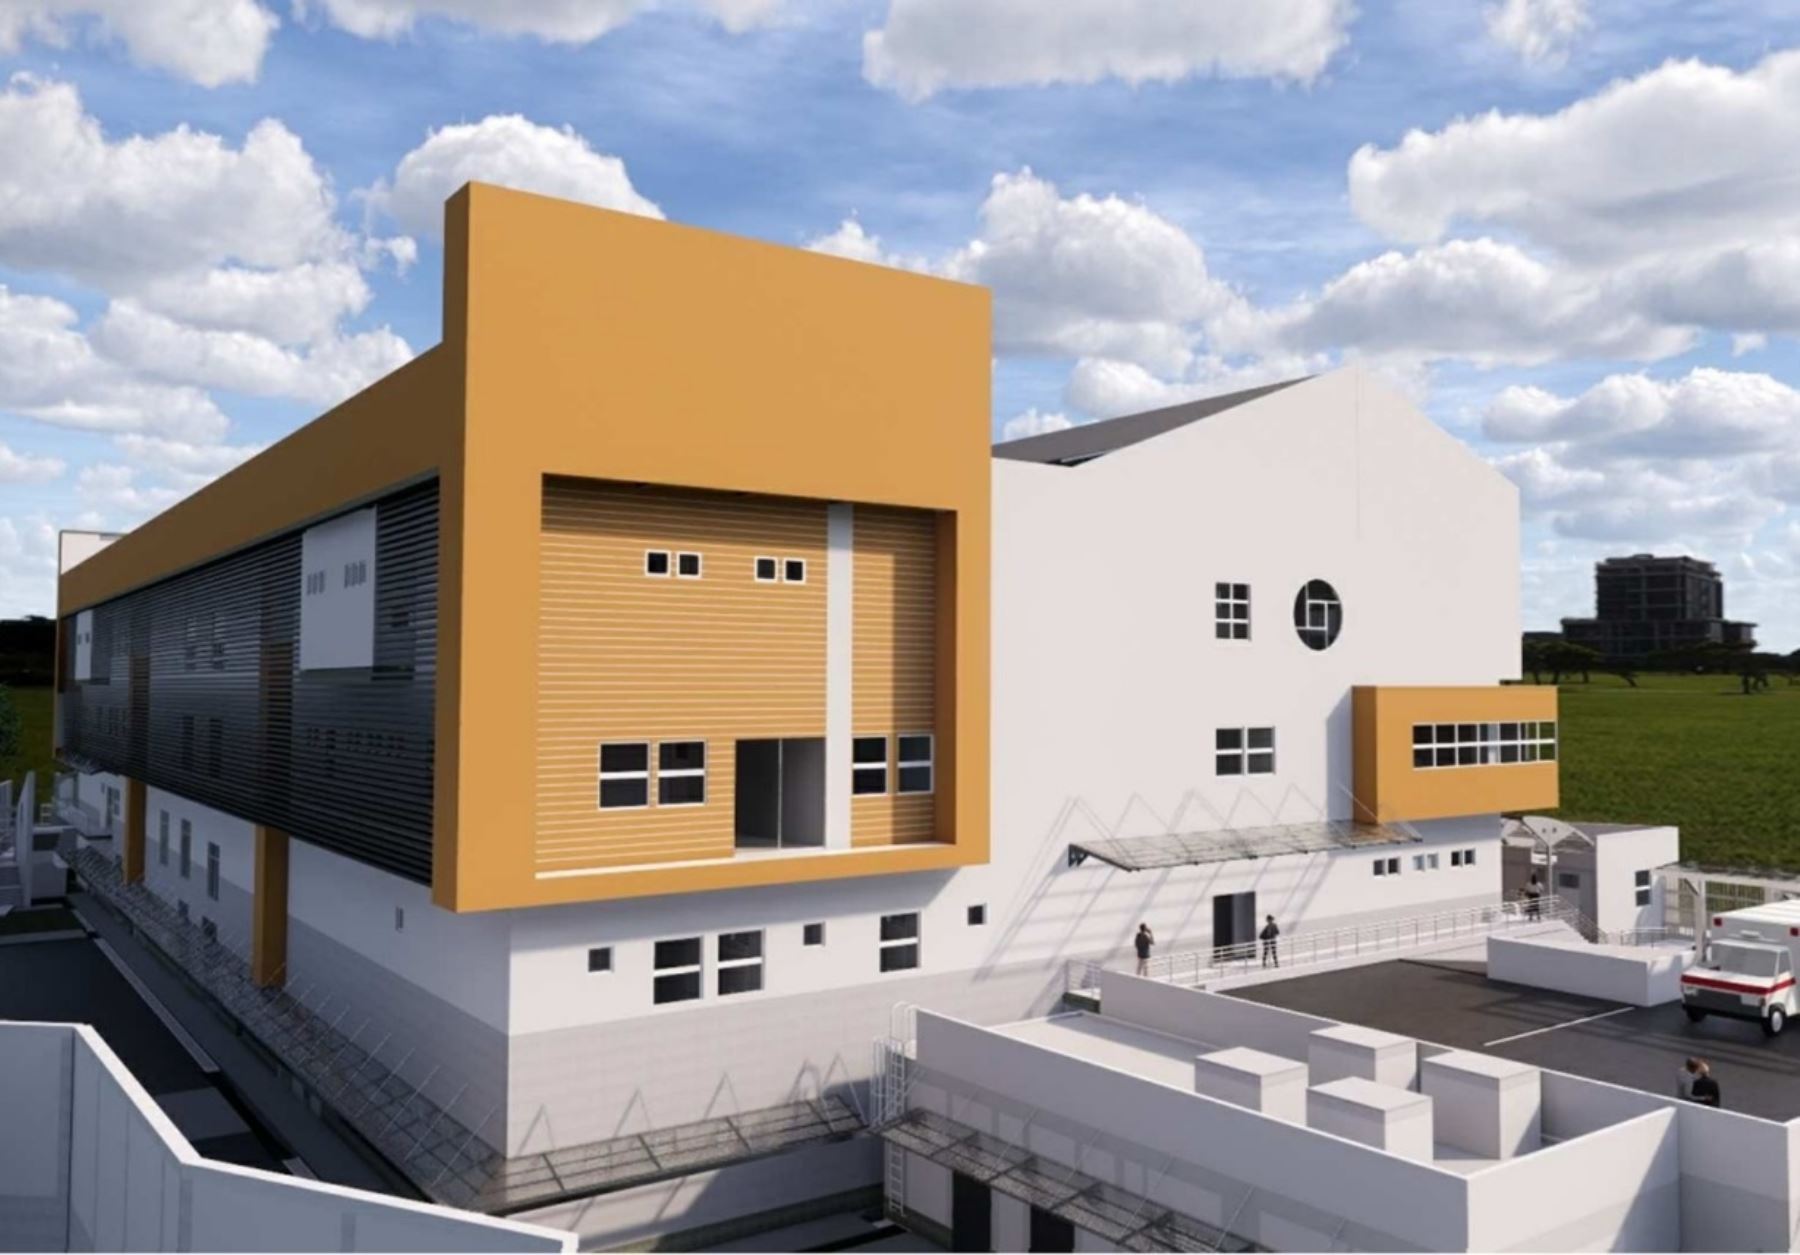 El Programa Nacional de Inversiones en Saludconvocó a licitación pública la construcción del hospital Tambobamba, que se ubica en la región Apurímac. Foto: ANDINA/difusión.